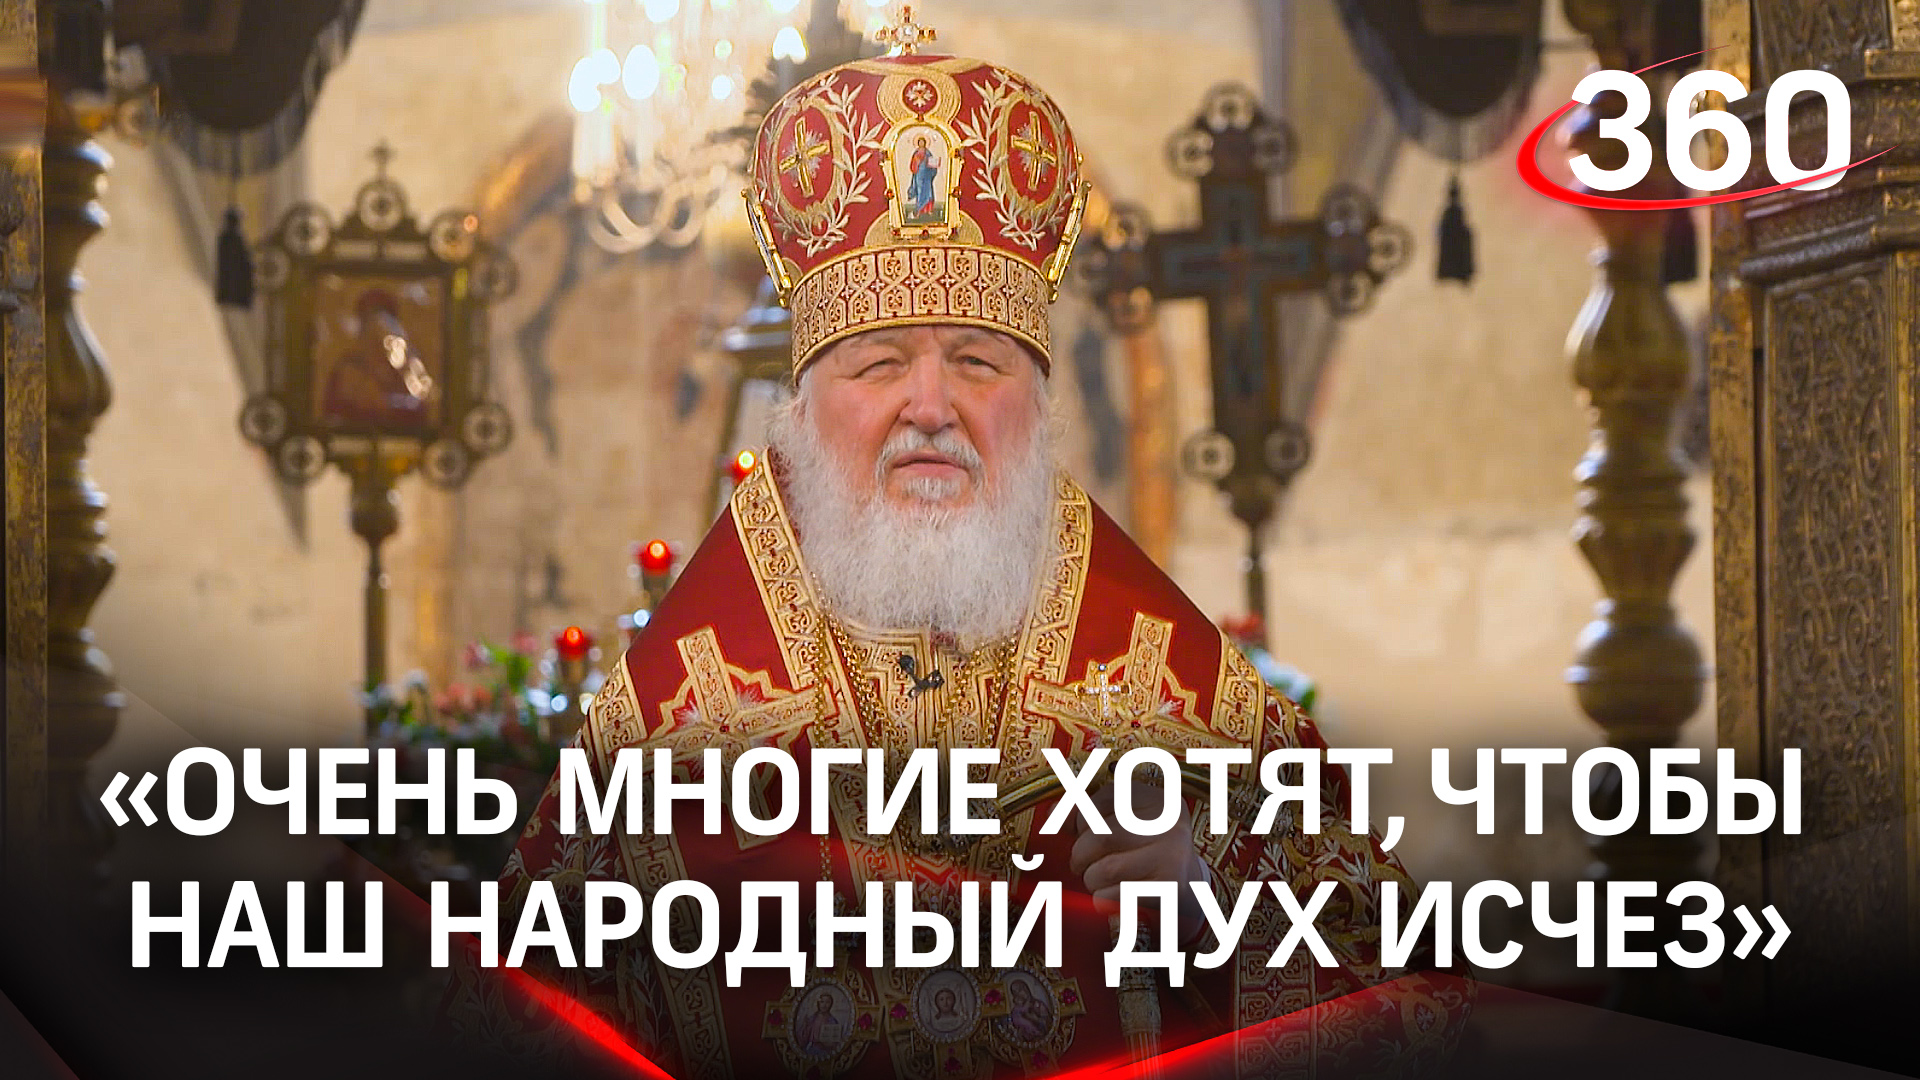 «Очень многие хотят, чтобы наш народный дух исчез»: проповедь патриарха Кирилла